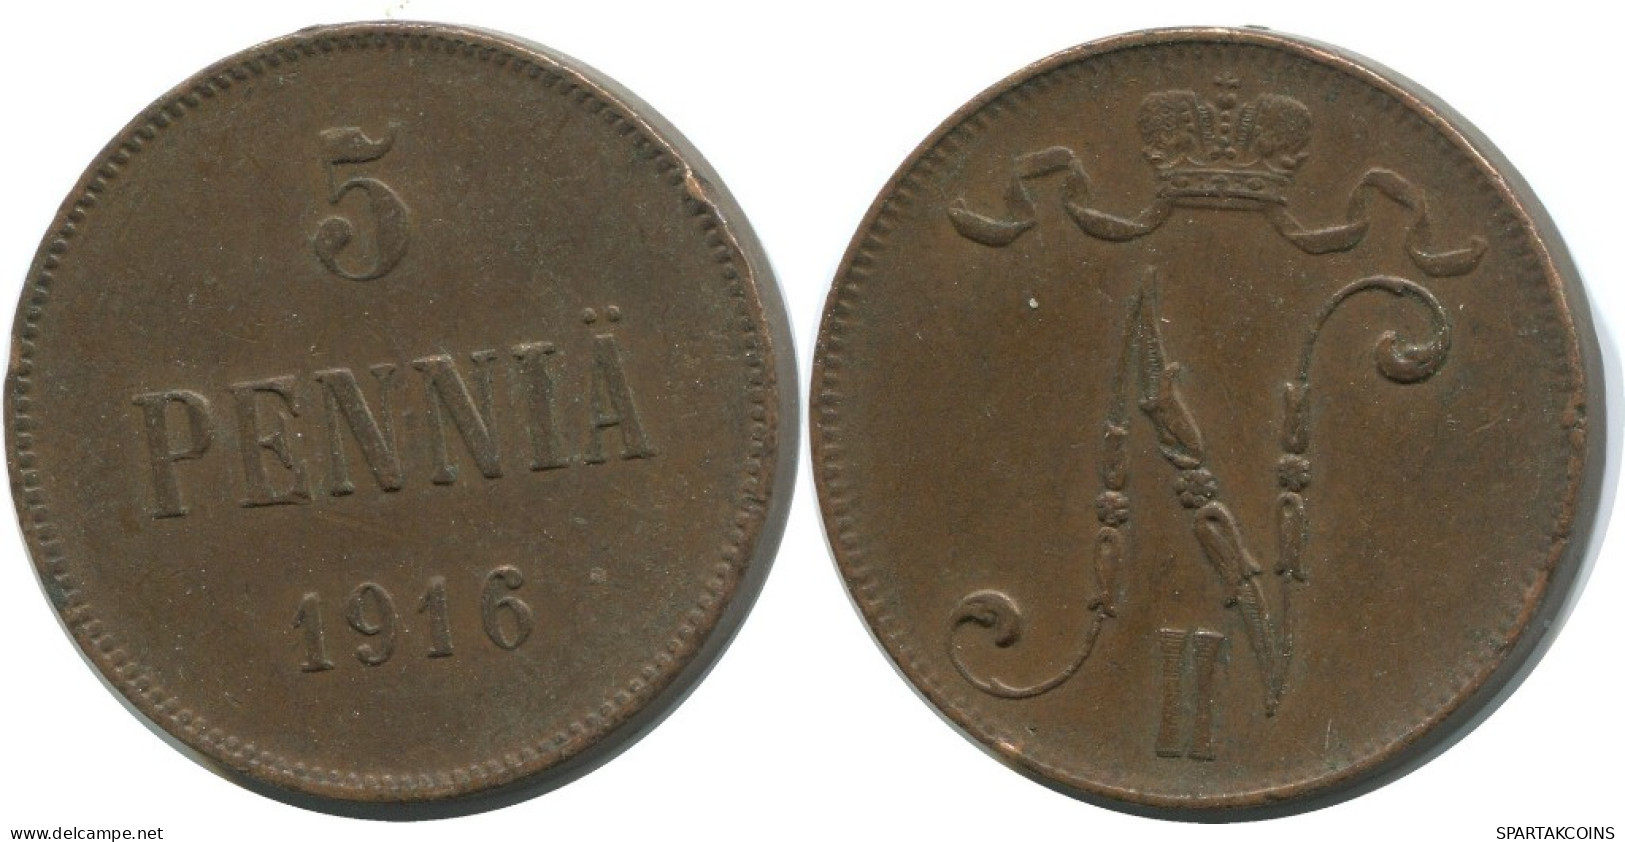 5 PENNIA 1916 FINLANDIA FINLAND Moneda RUSIA RUSSIA EMPIRE #AB209.5.E.A - Finnland